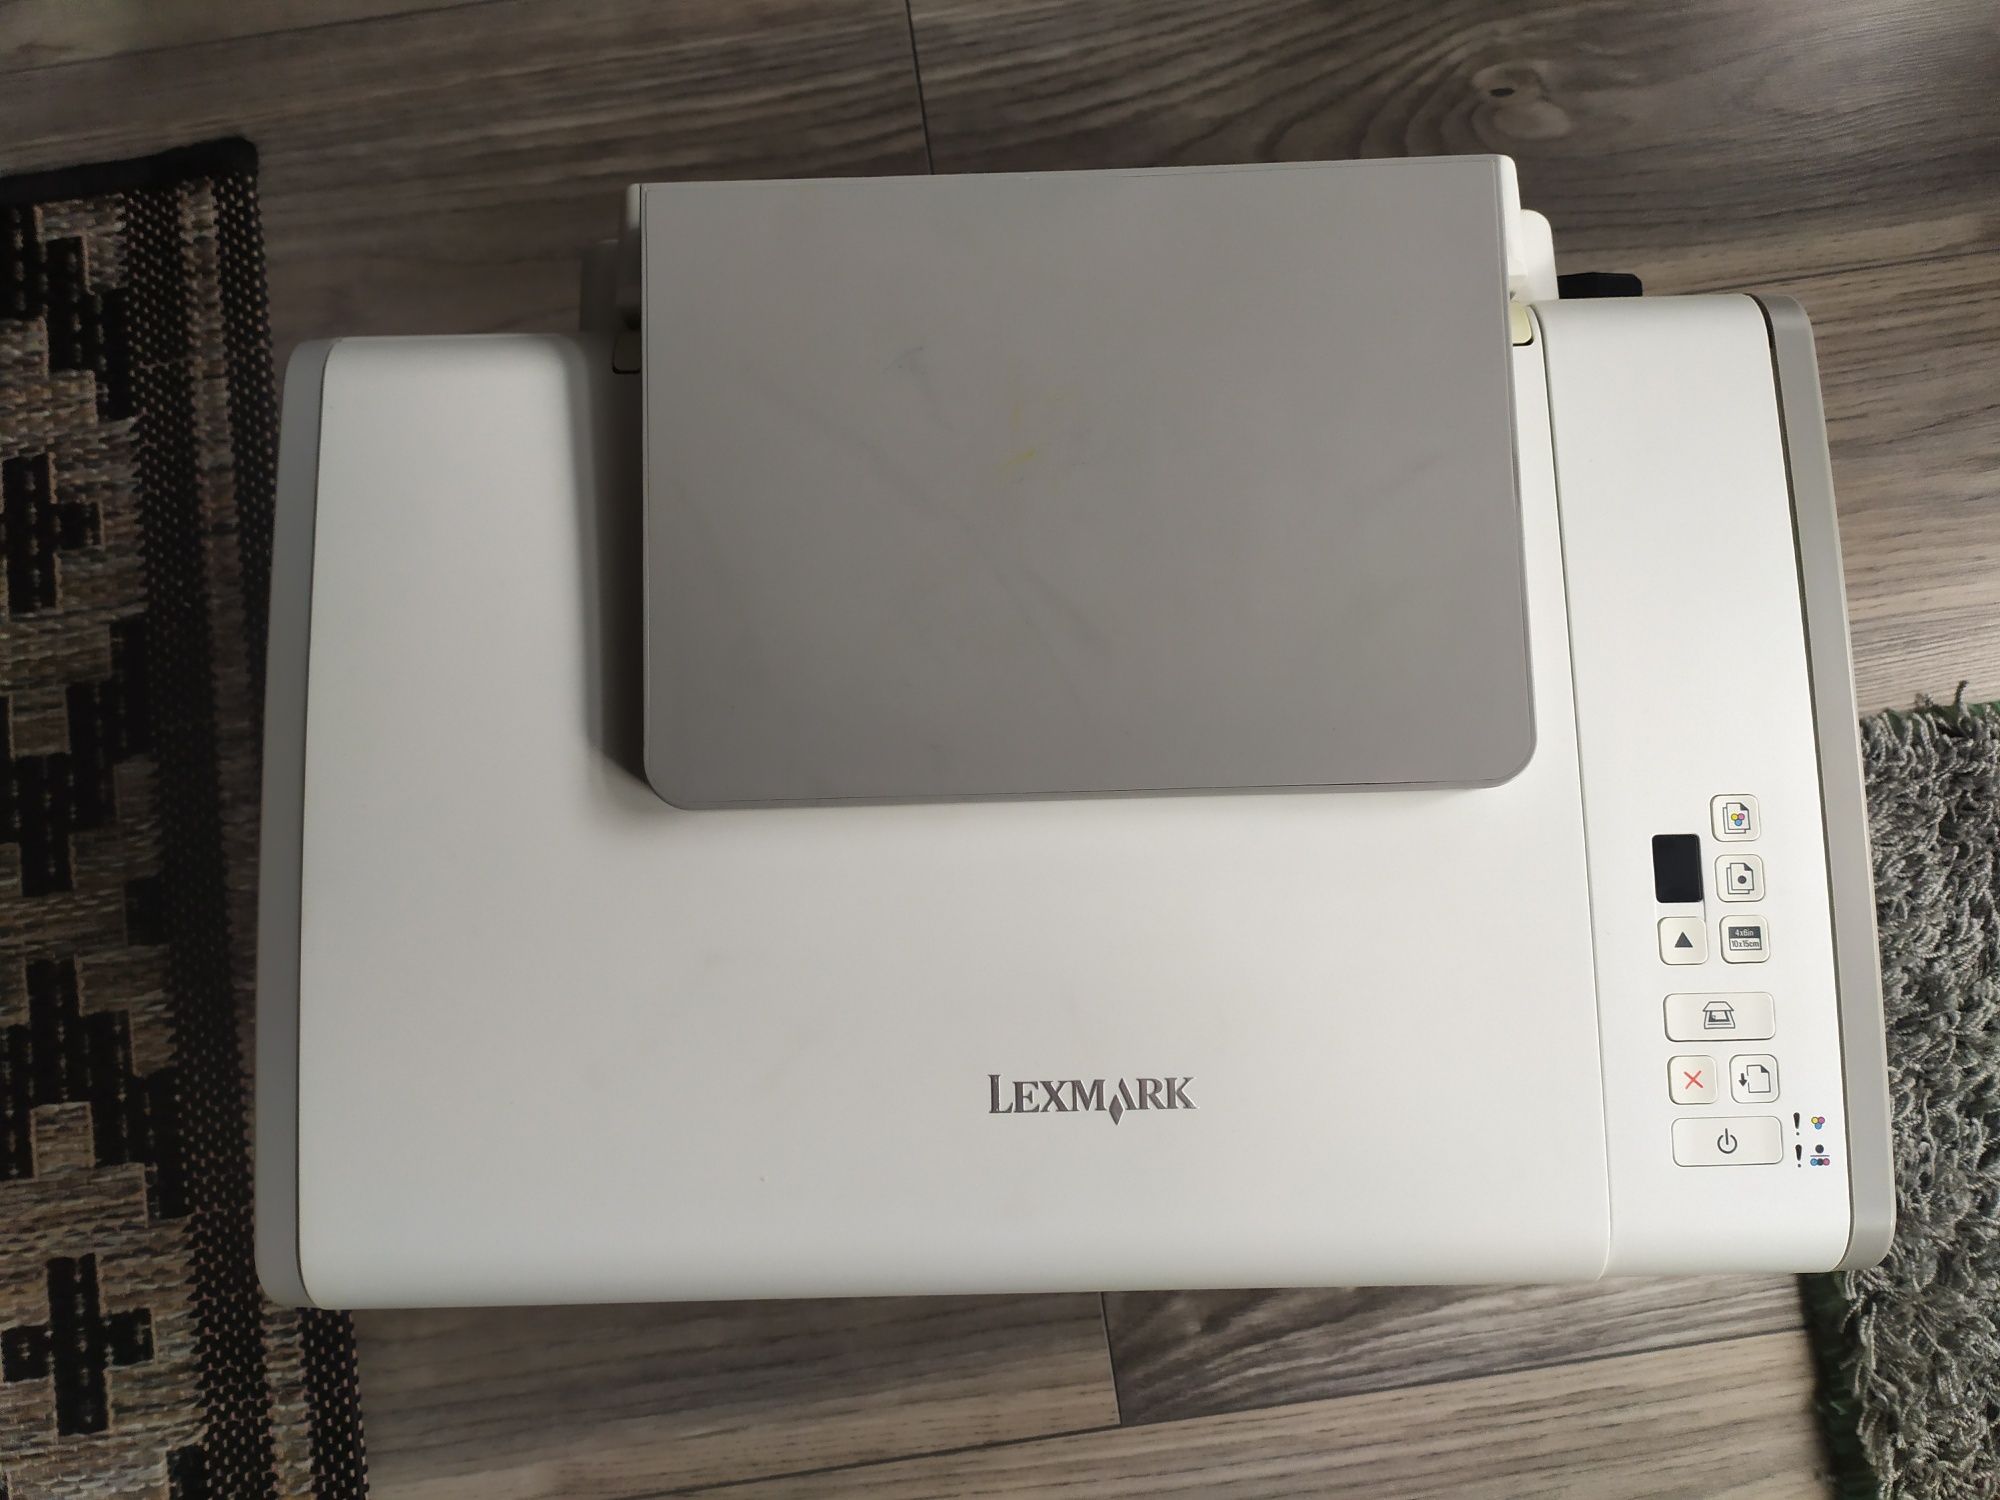 Lexmark series 2600 urządzenie wielofunkcyjne